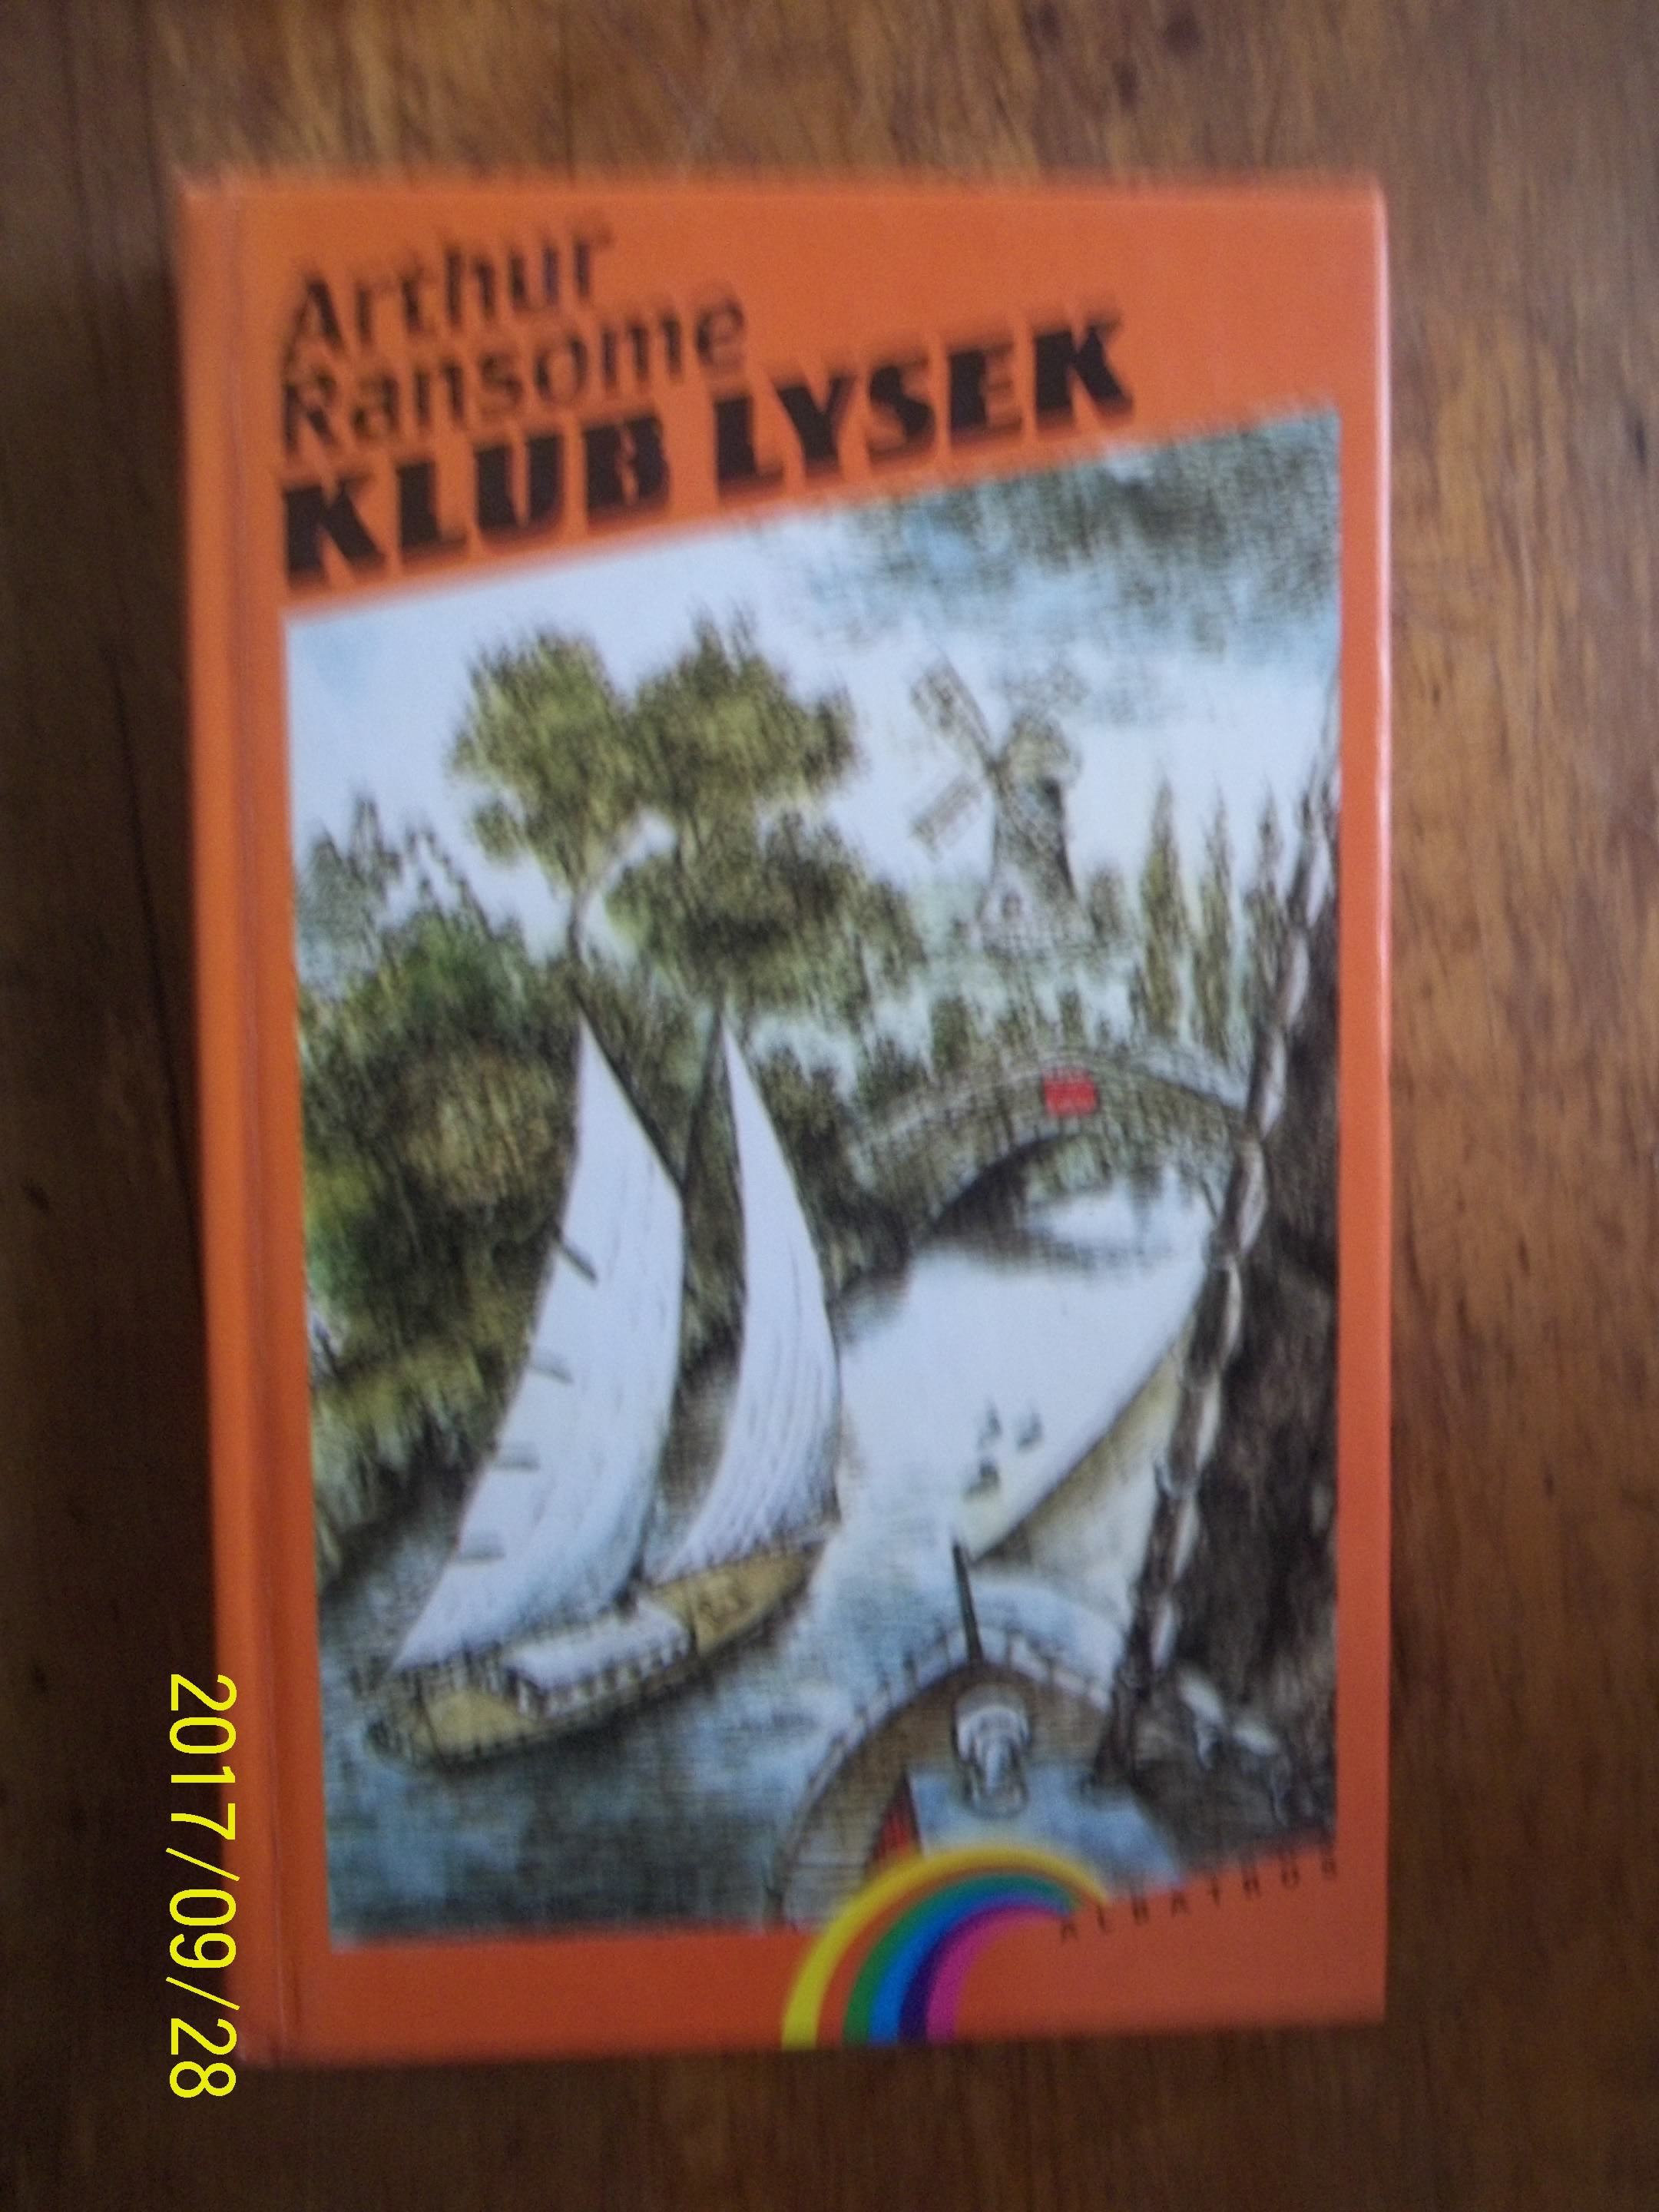 zobrazit detail knihy Ransome, Arthur: Klub Lysek 1992